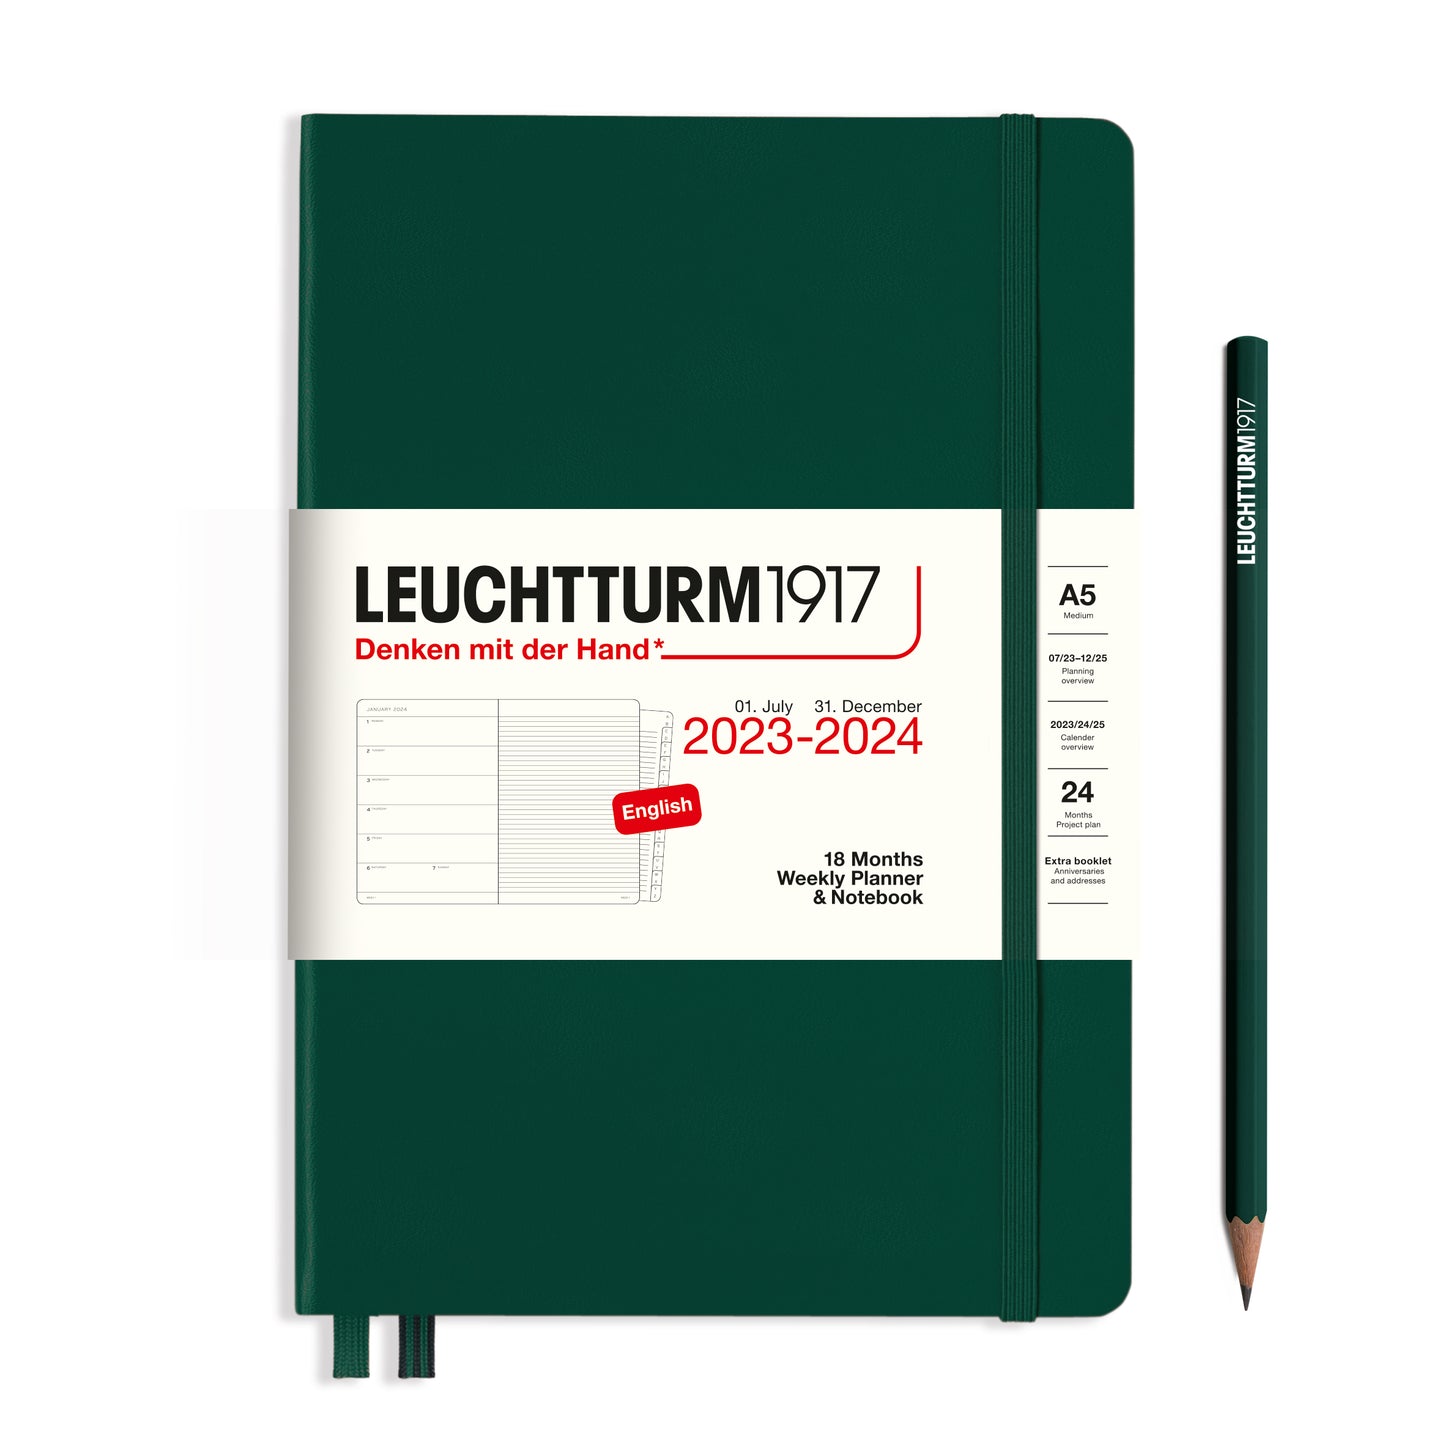 18 Månaders Weekly Planner & Notebook Medium A5 Leuchtturm 1917 - Två färger